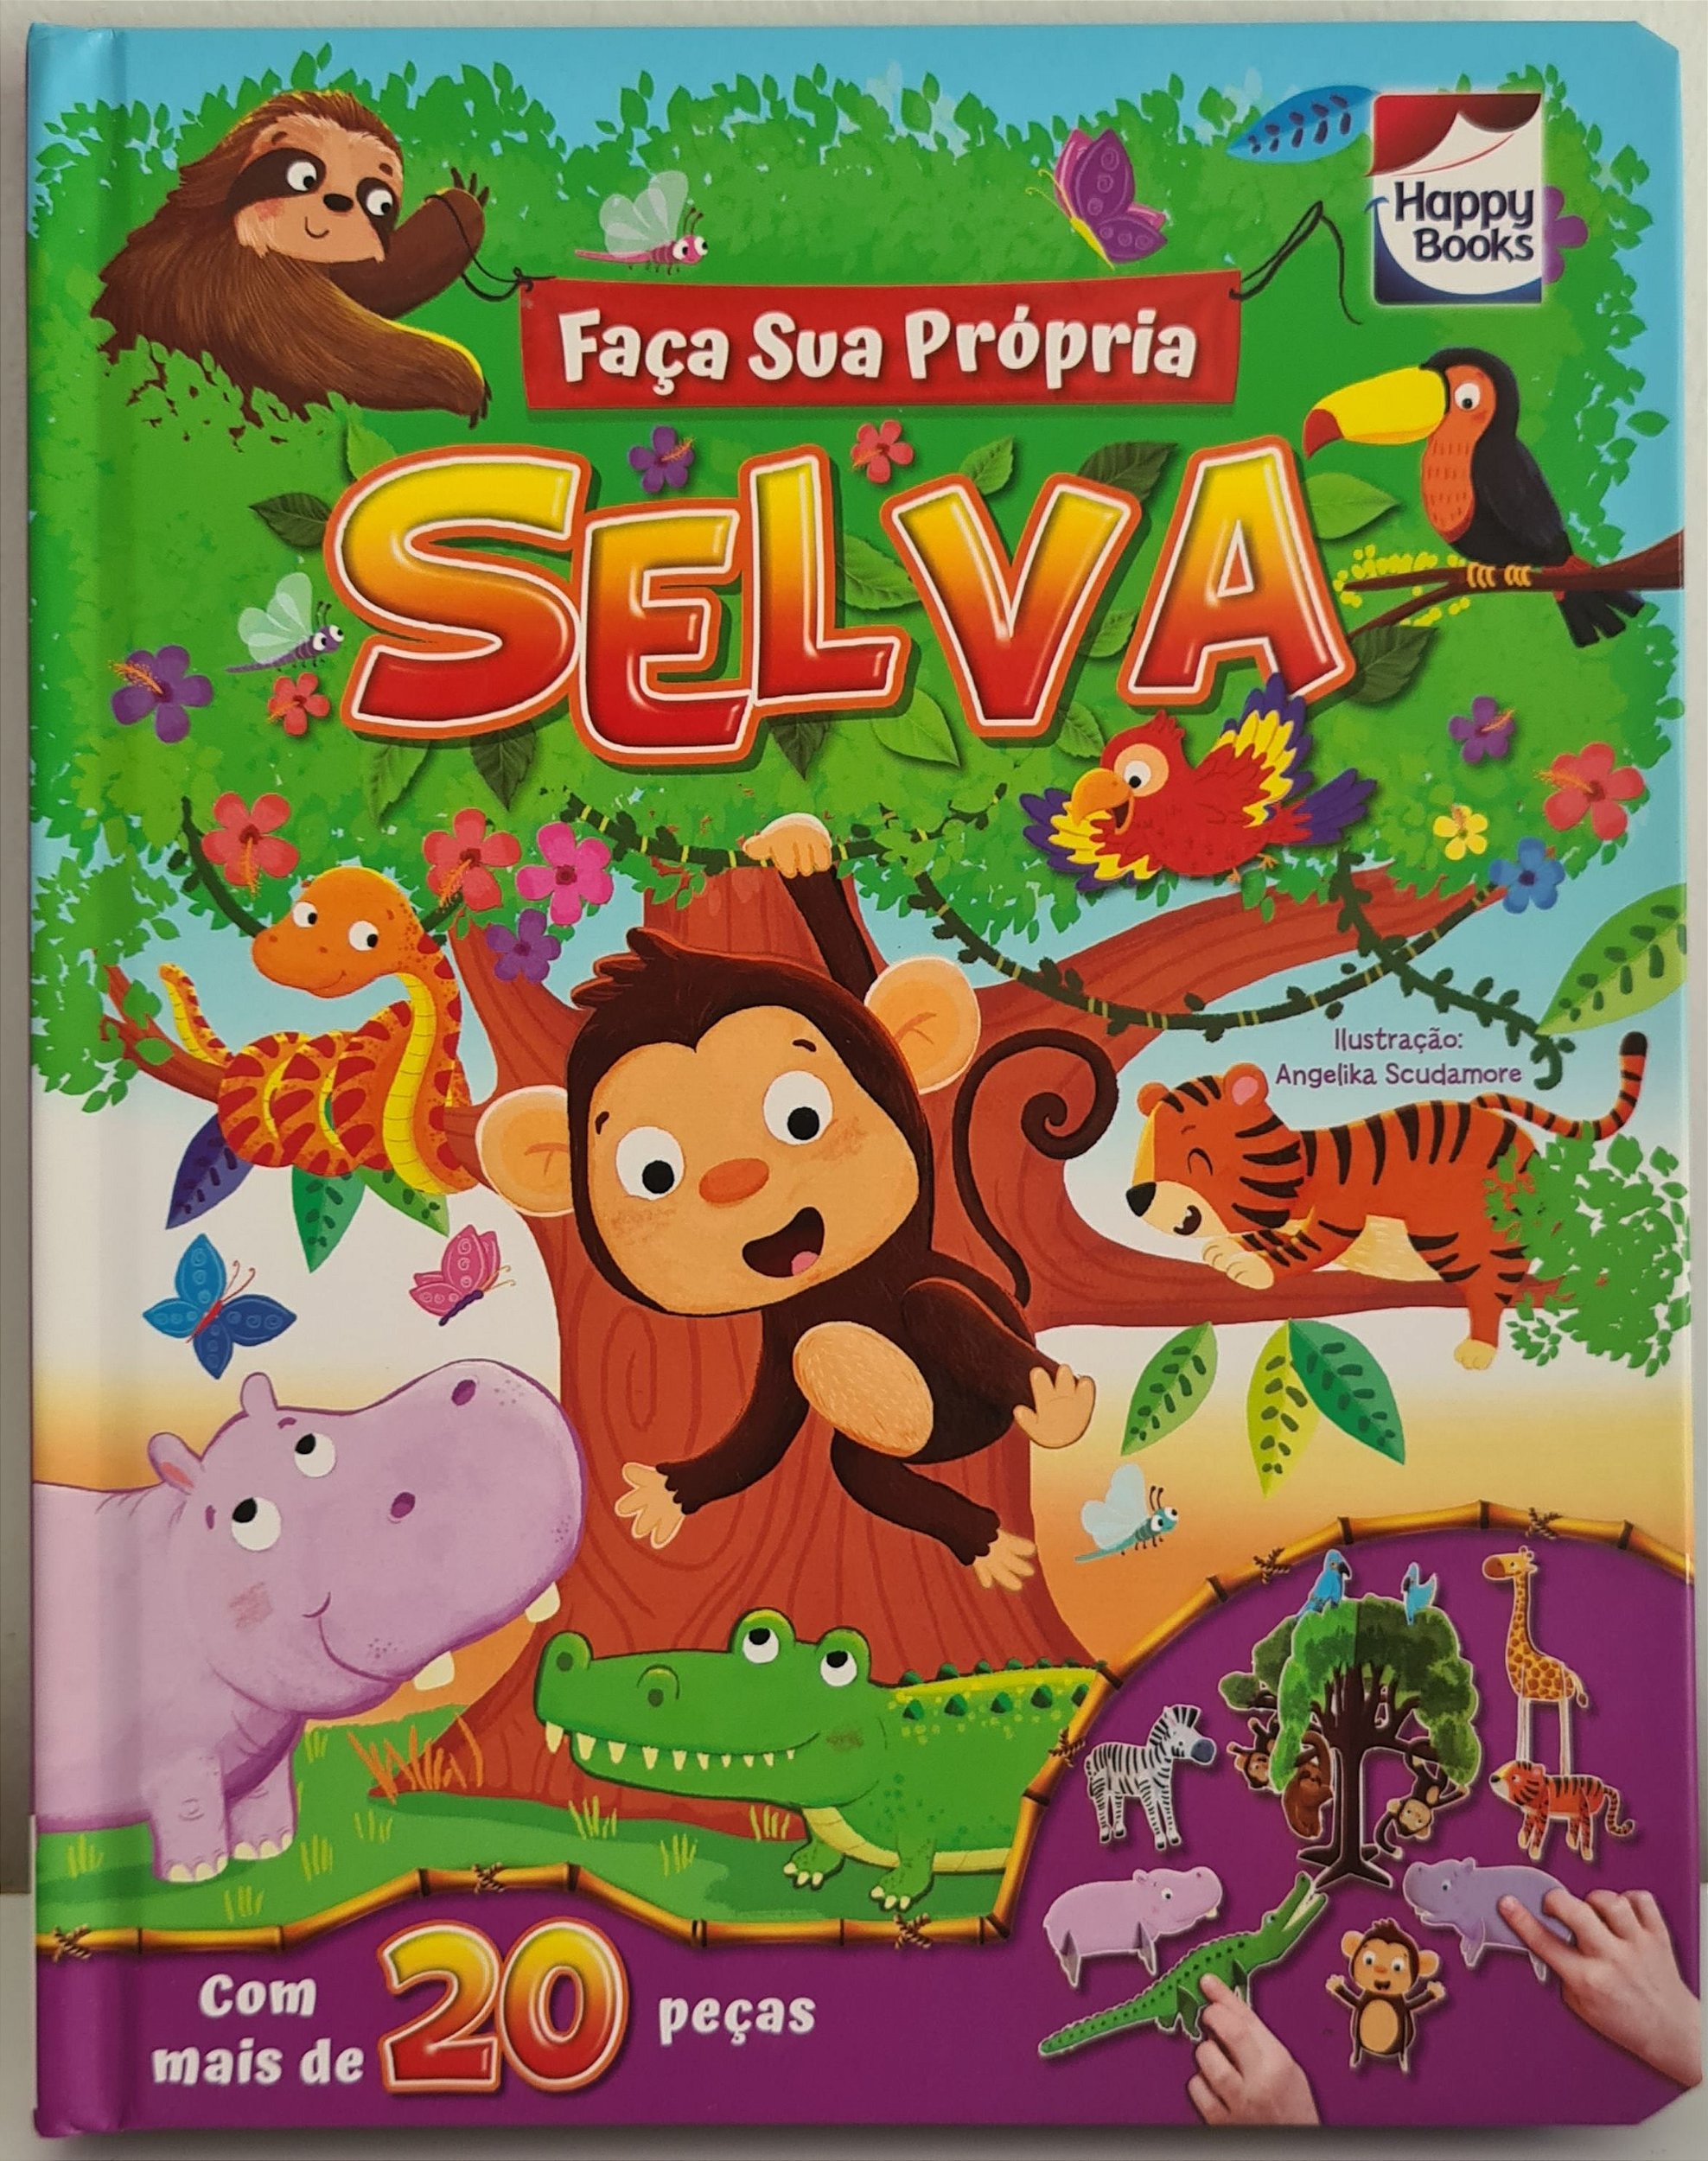 Faça Sua Própria Selva Livro Infantil Com Peças Para Montar Miniteca Livraria Infantil 7429